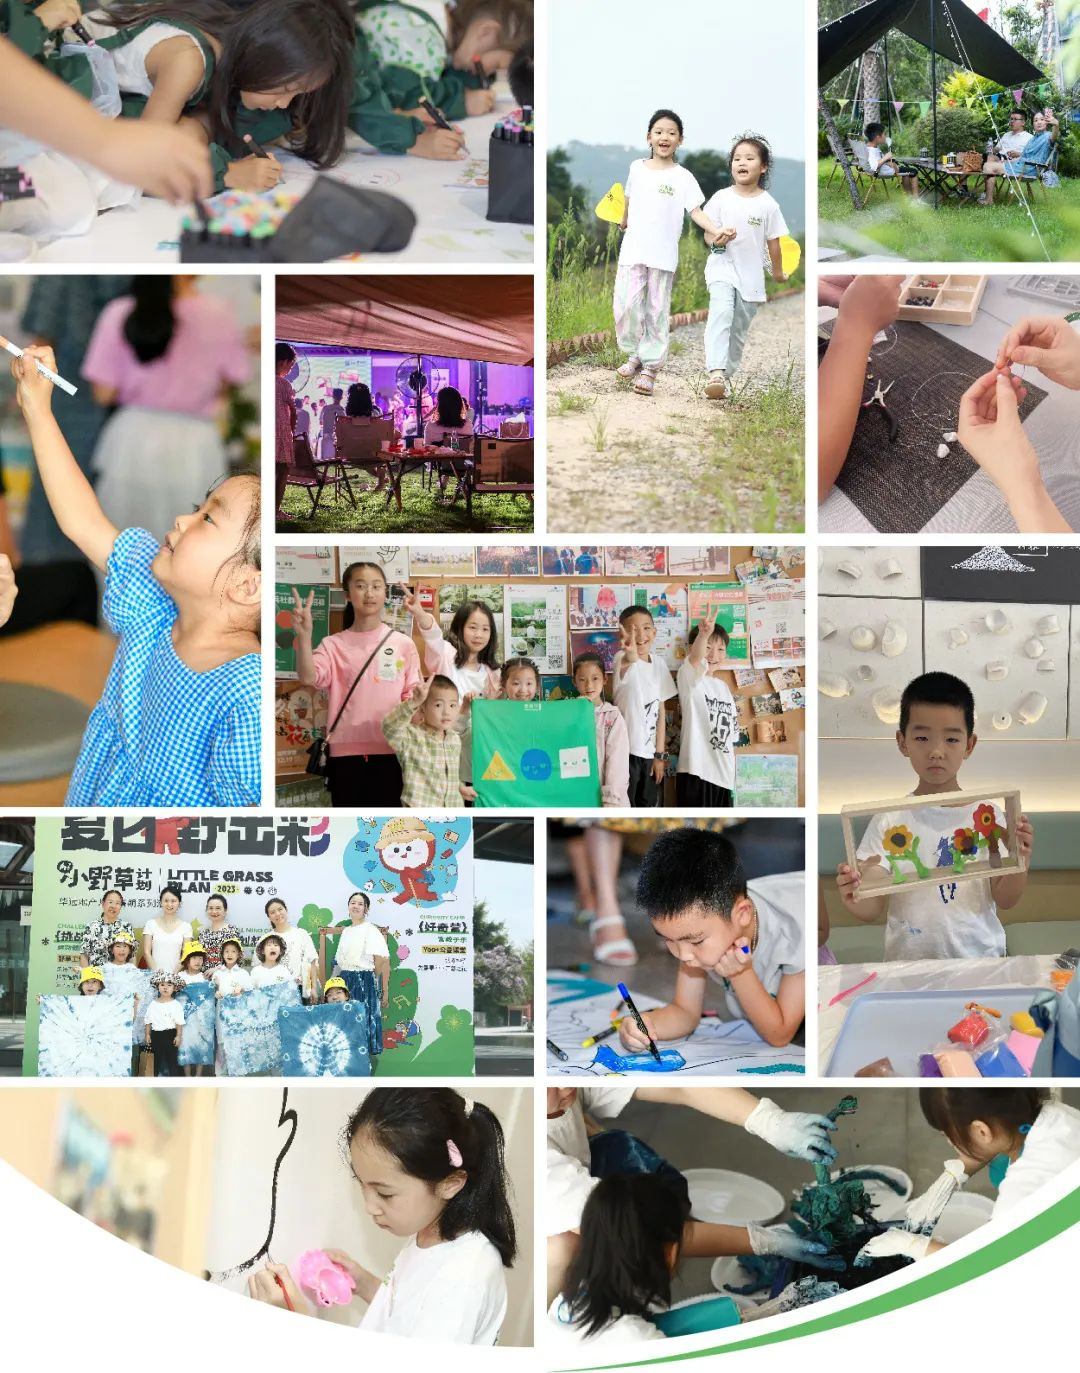 华远Hi平台「小野草计划」第二季完美收官 华远地产升级打造儿童友好型社区